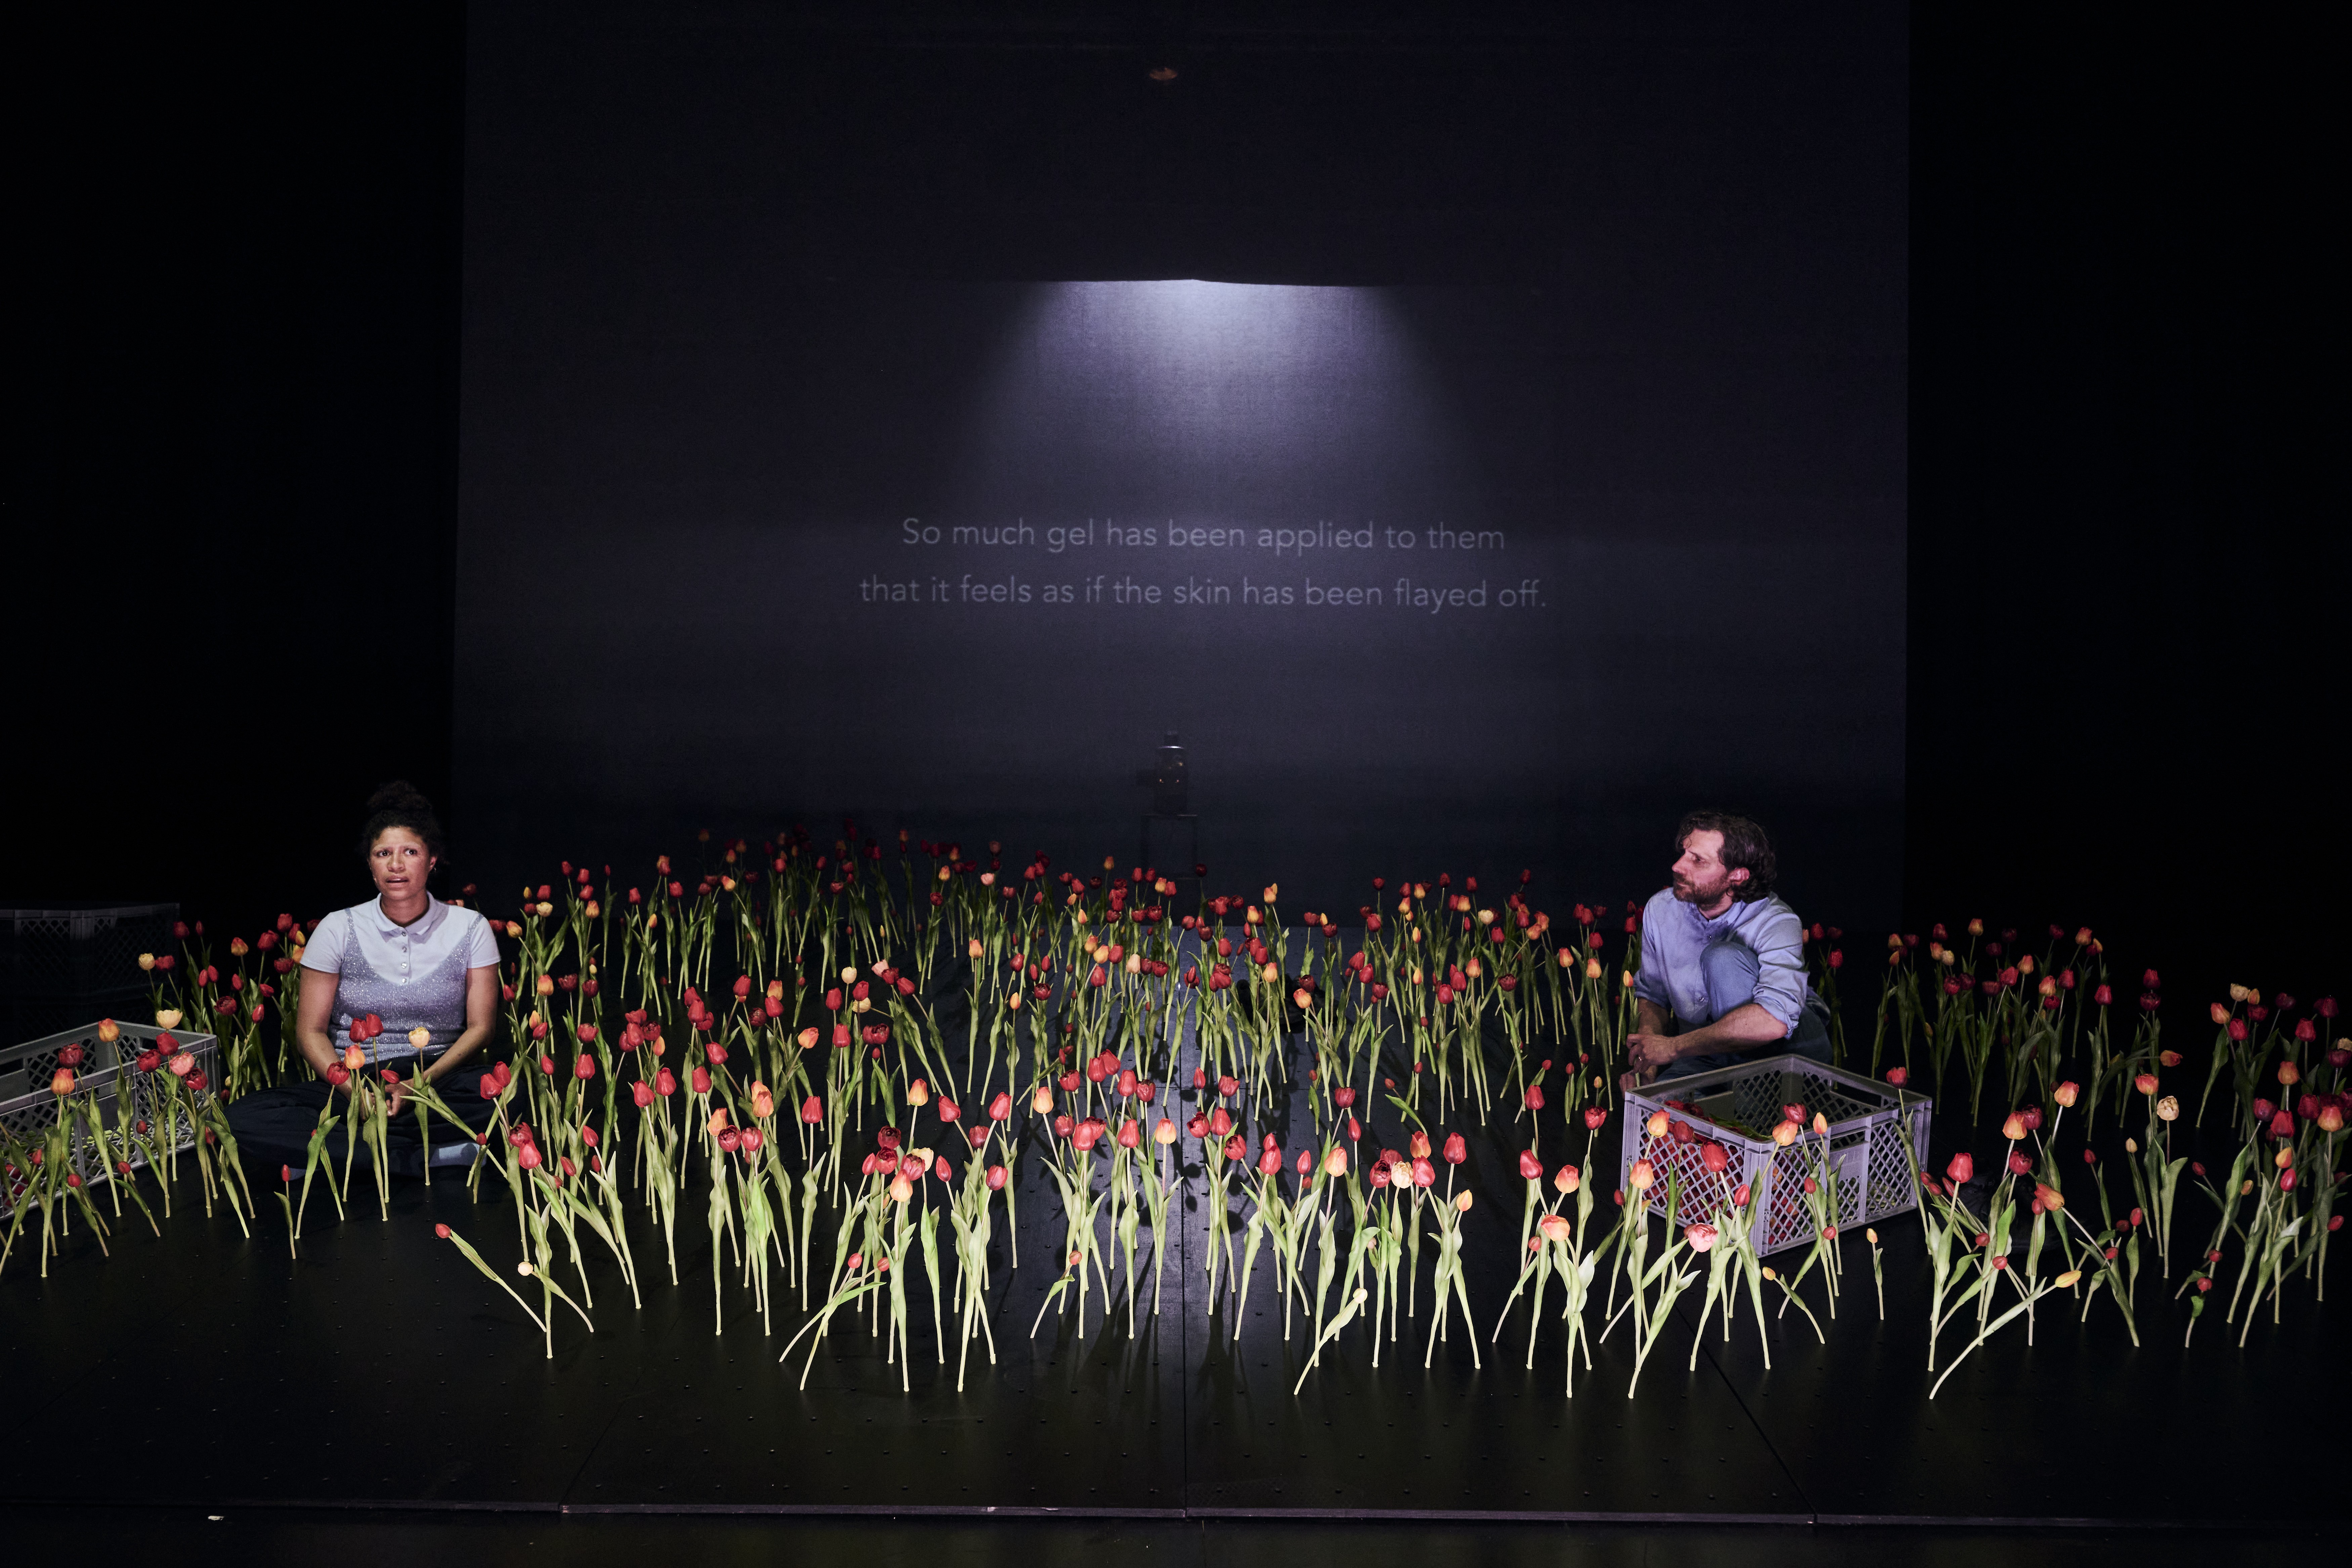 Das Bild ist dunkel gehalten. Zwei Menschen sitzen am Boden inmitten von sehr vielen roten Tulpen. Im Hintergrund hat es eine Projektion mit Text.